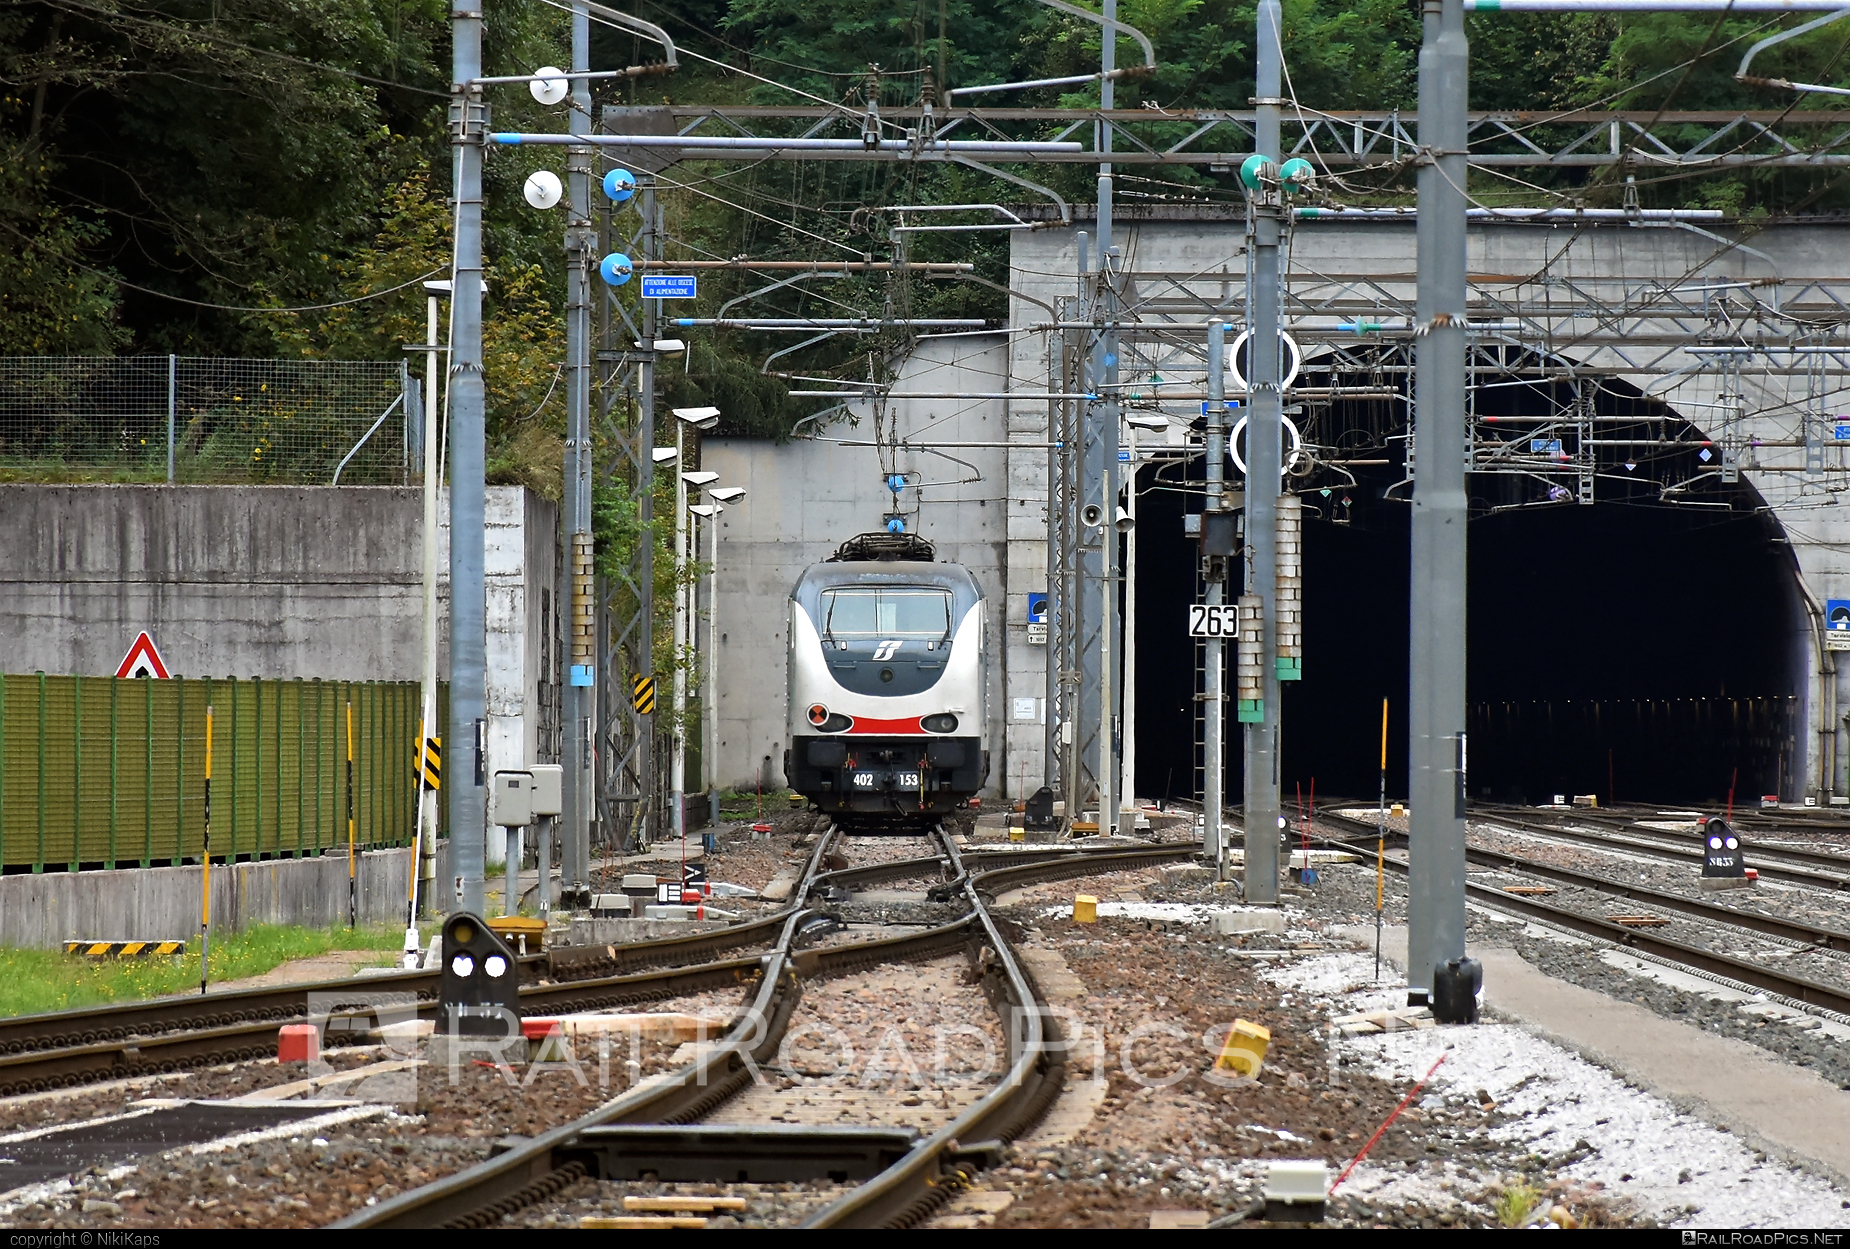 Ansaldo Trasporti Class E.402B - 402 153 operated by Trenitalia S.p.A. #ansaldo402 #ansaldoTrasporti #ansaldoe402 #ansaldoe402b #e402 #e402b #ferroviedellostato #fs #fsitaliane #trenitalia #trenitaliaspa #tunnel